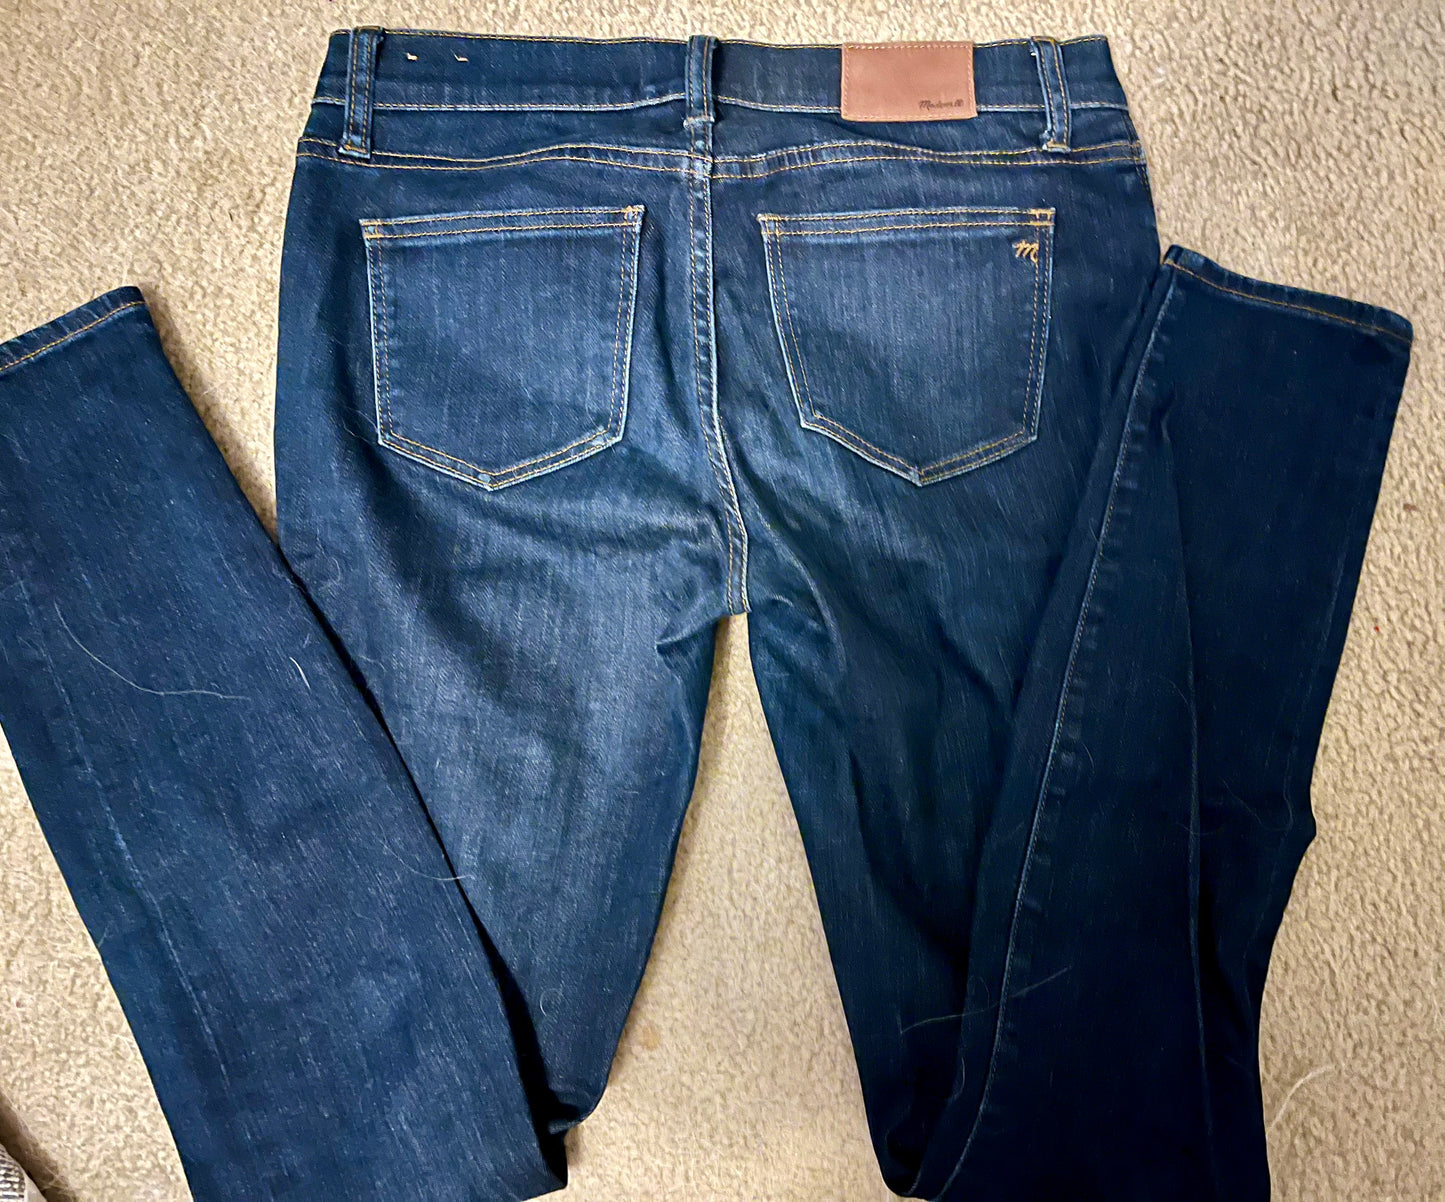 Madewell women’s size 27 skinny skinny dark wash jeans